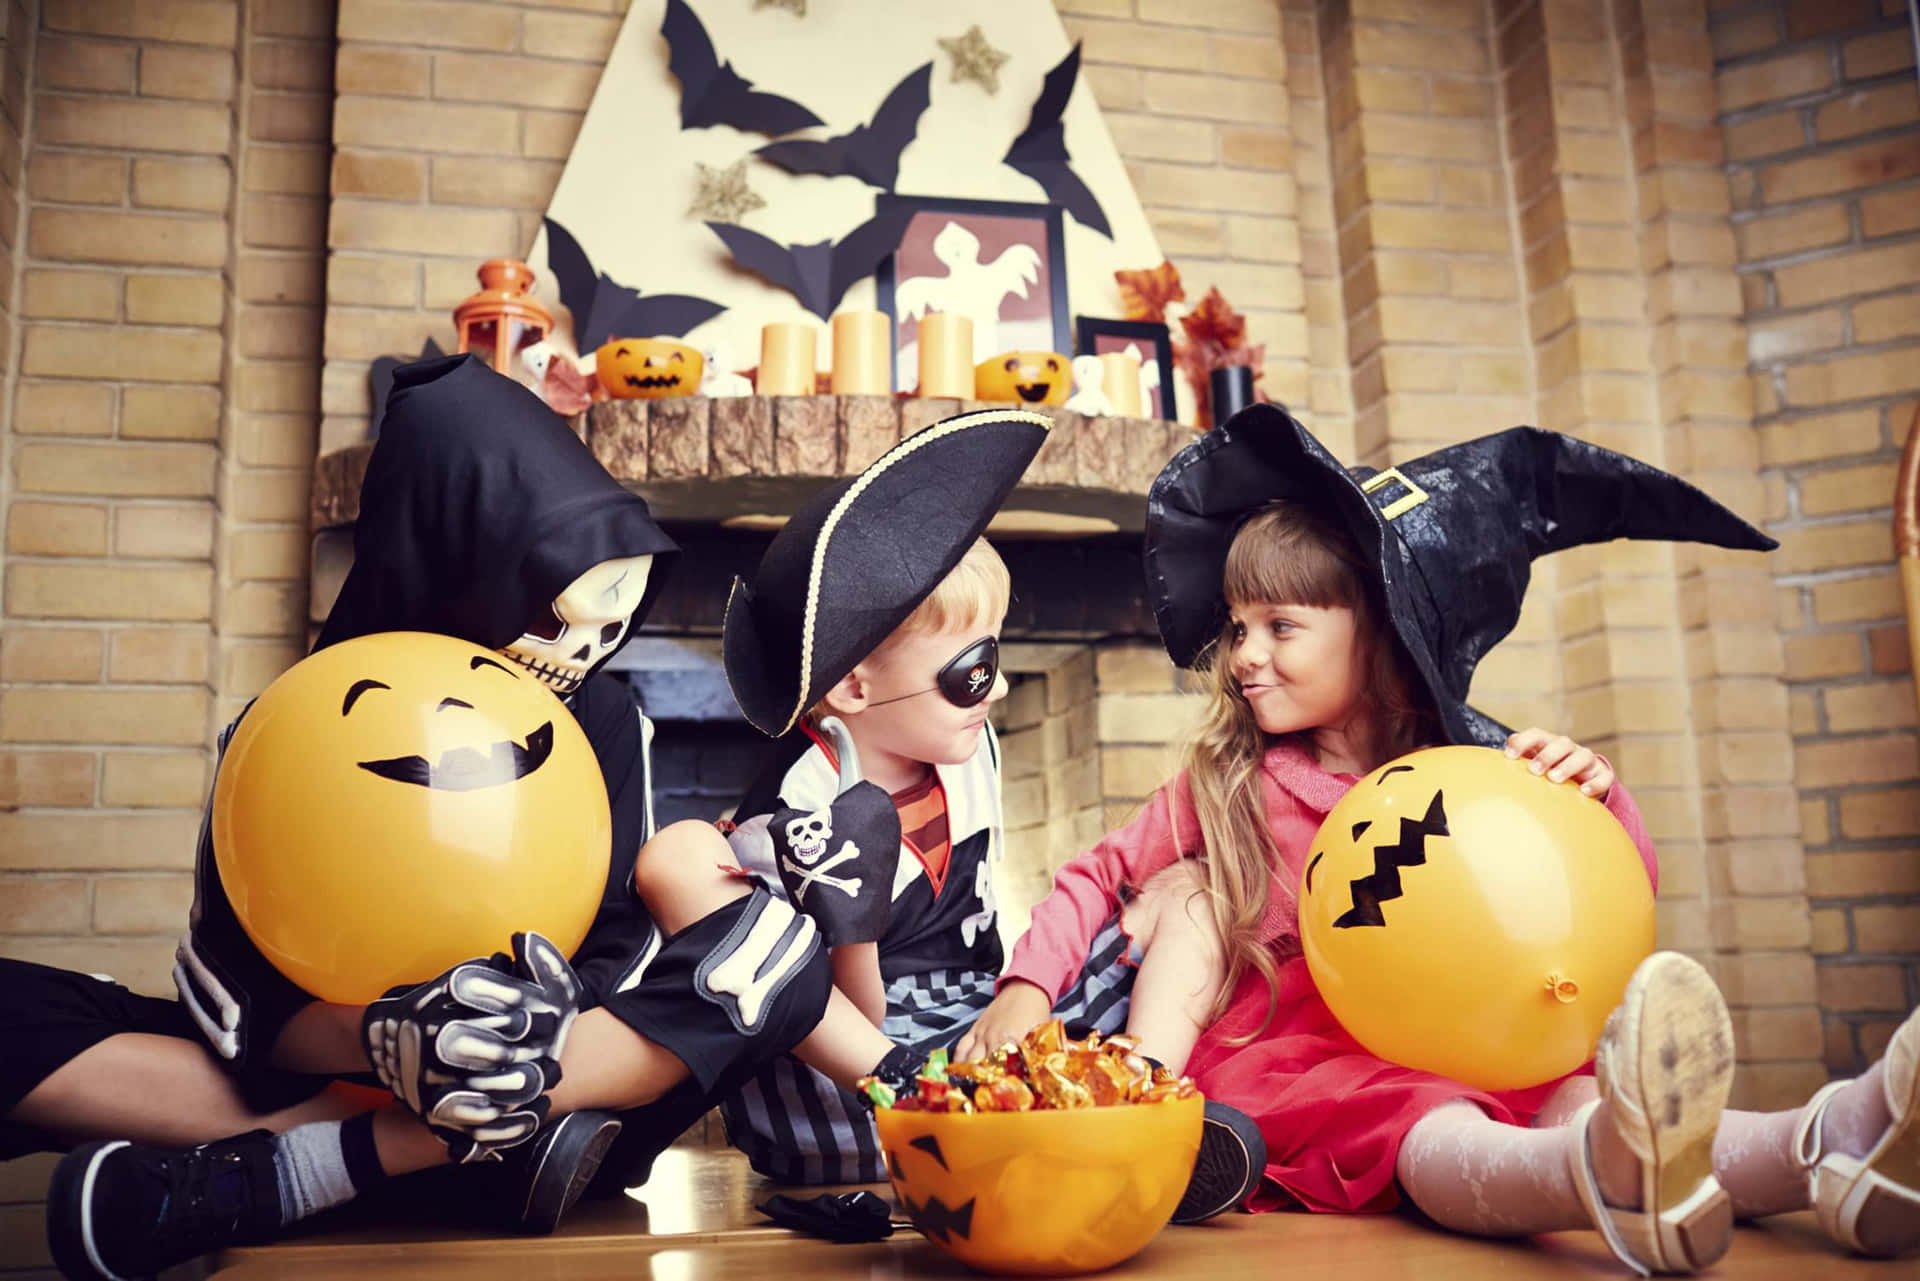 Imagende Una Fiesta De Halloween Para Bebés.